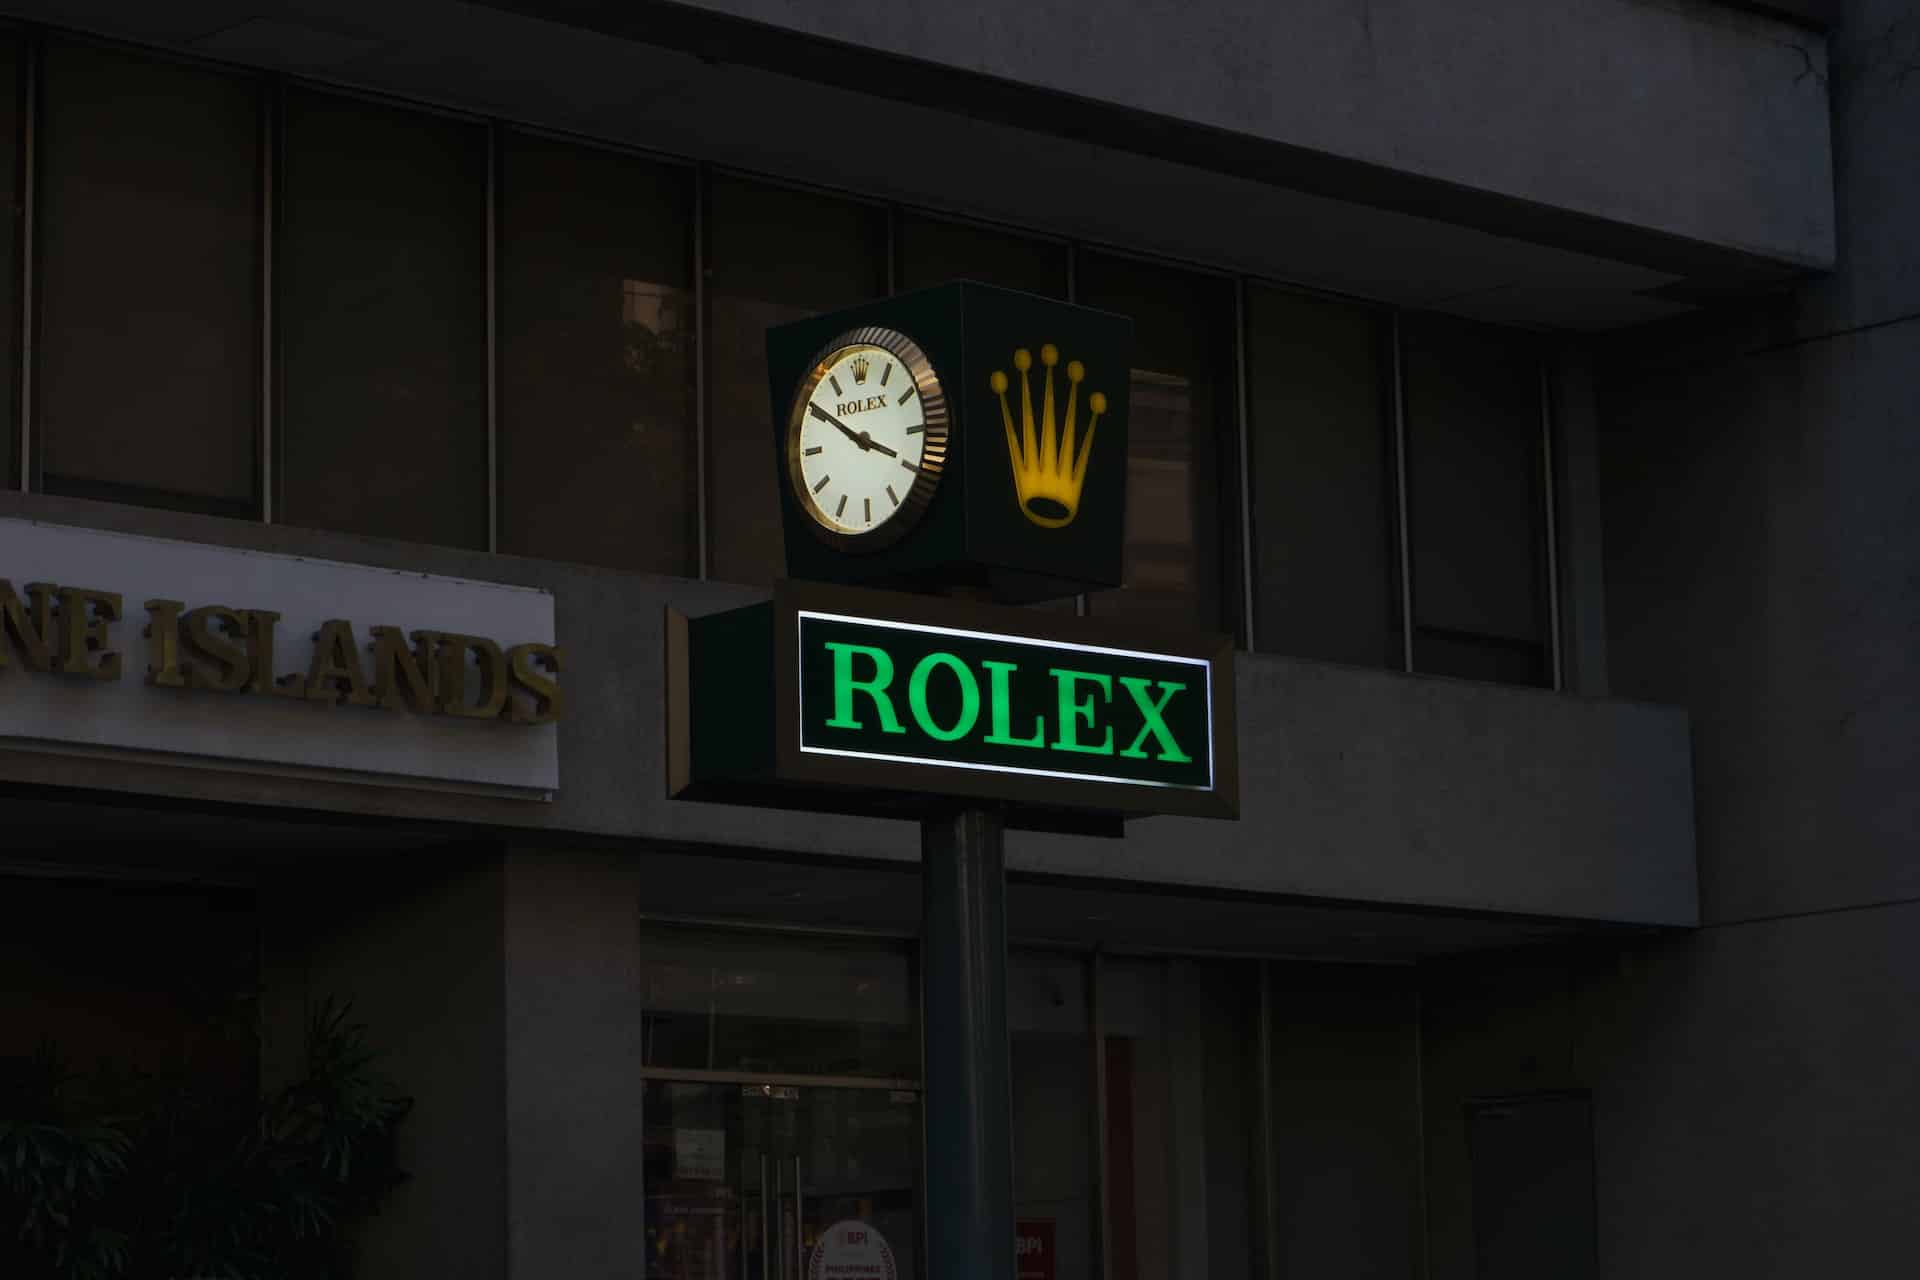 Rolex-prijzen blijven dalen op tweedehandsmarkt